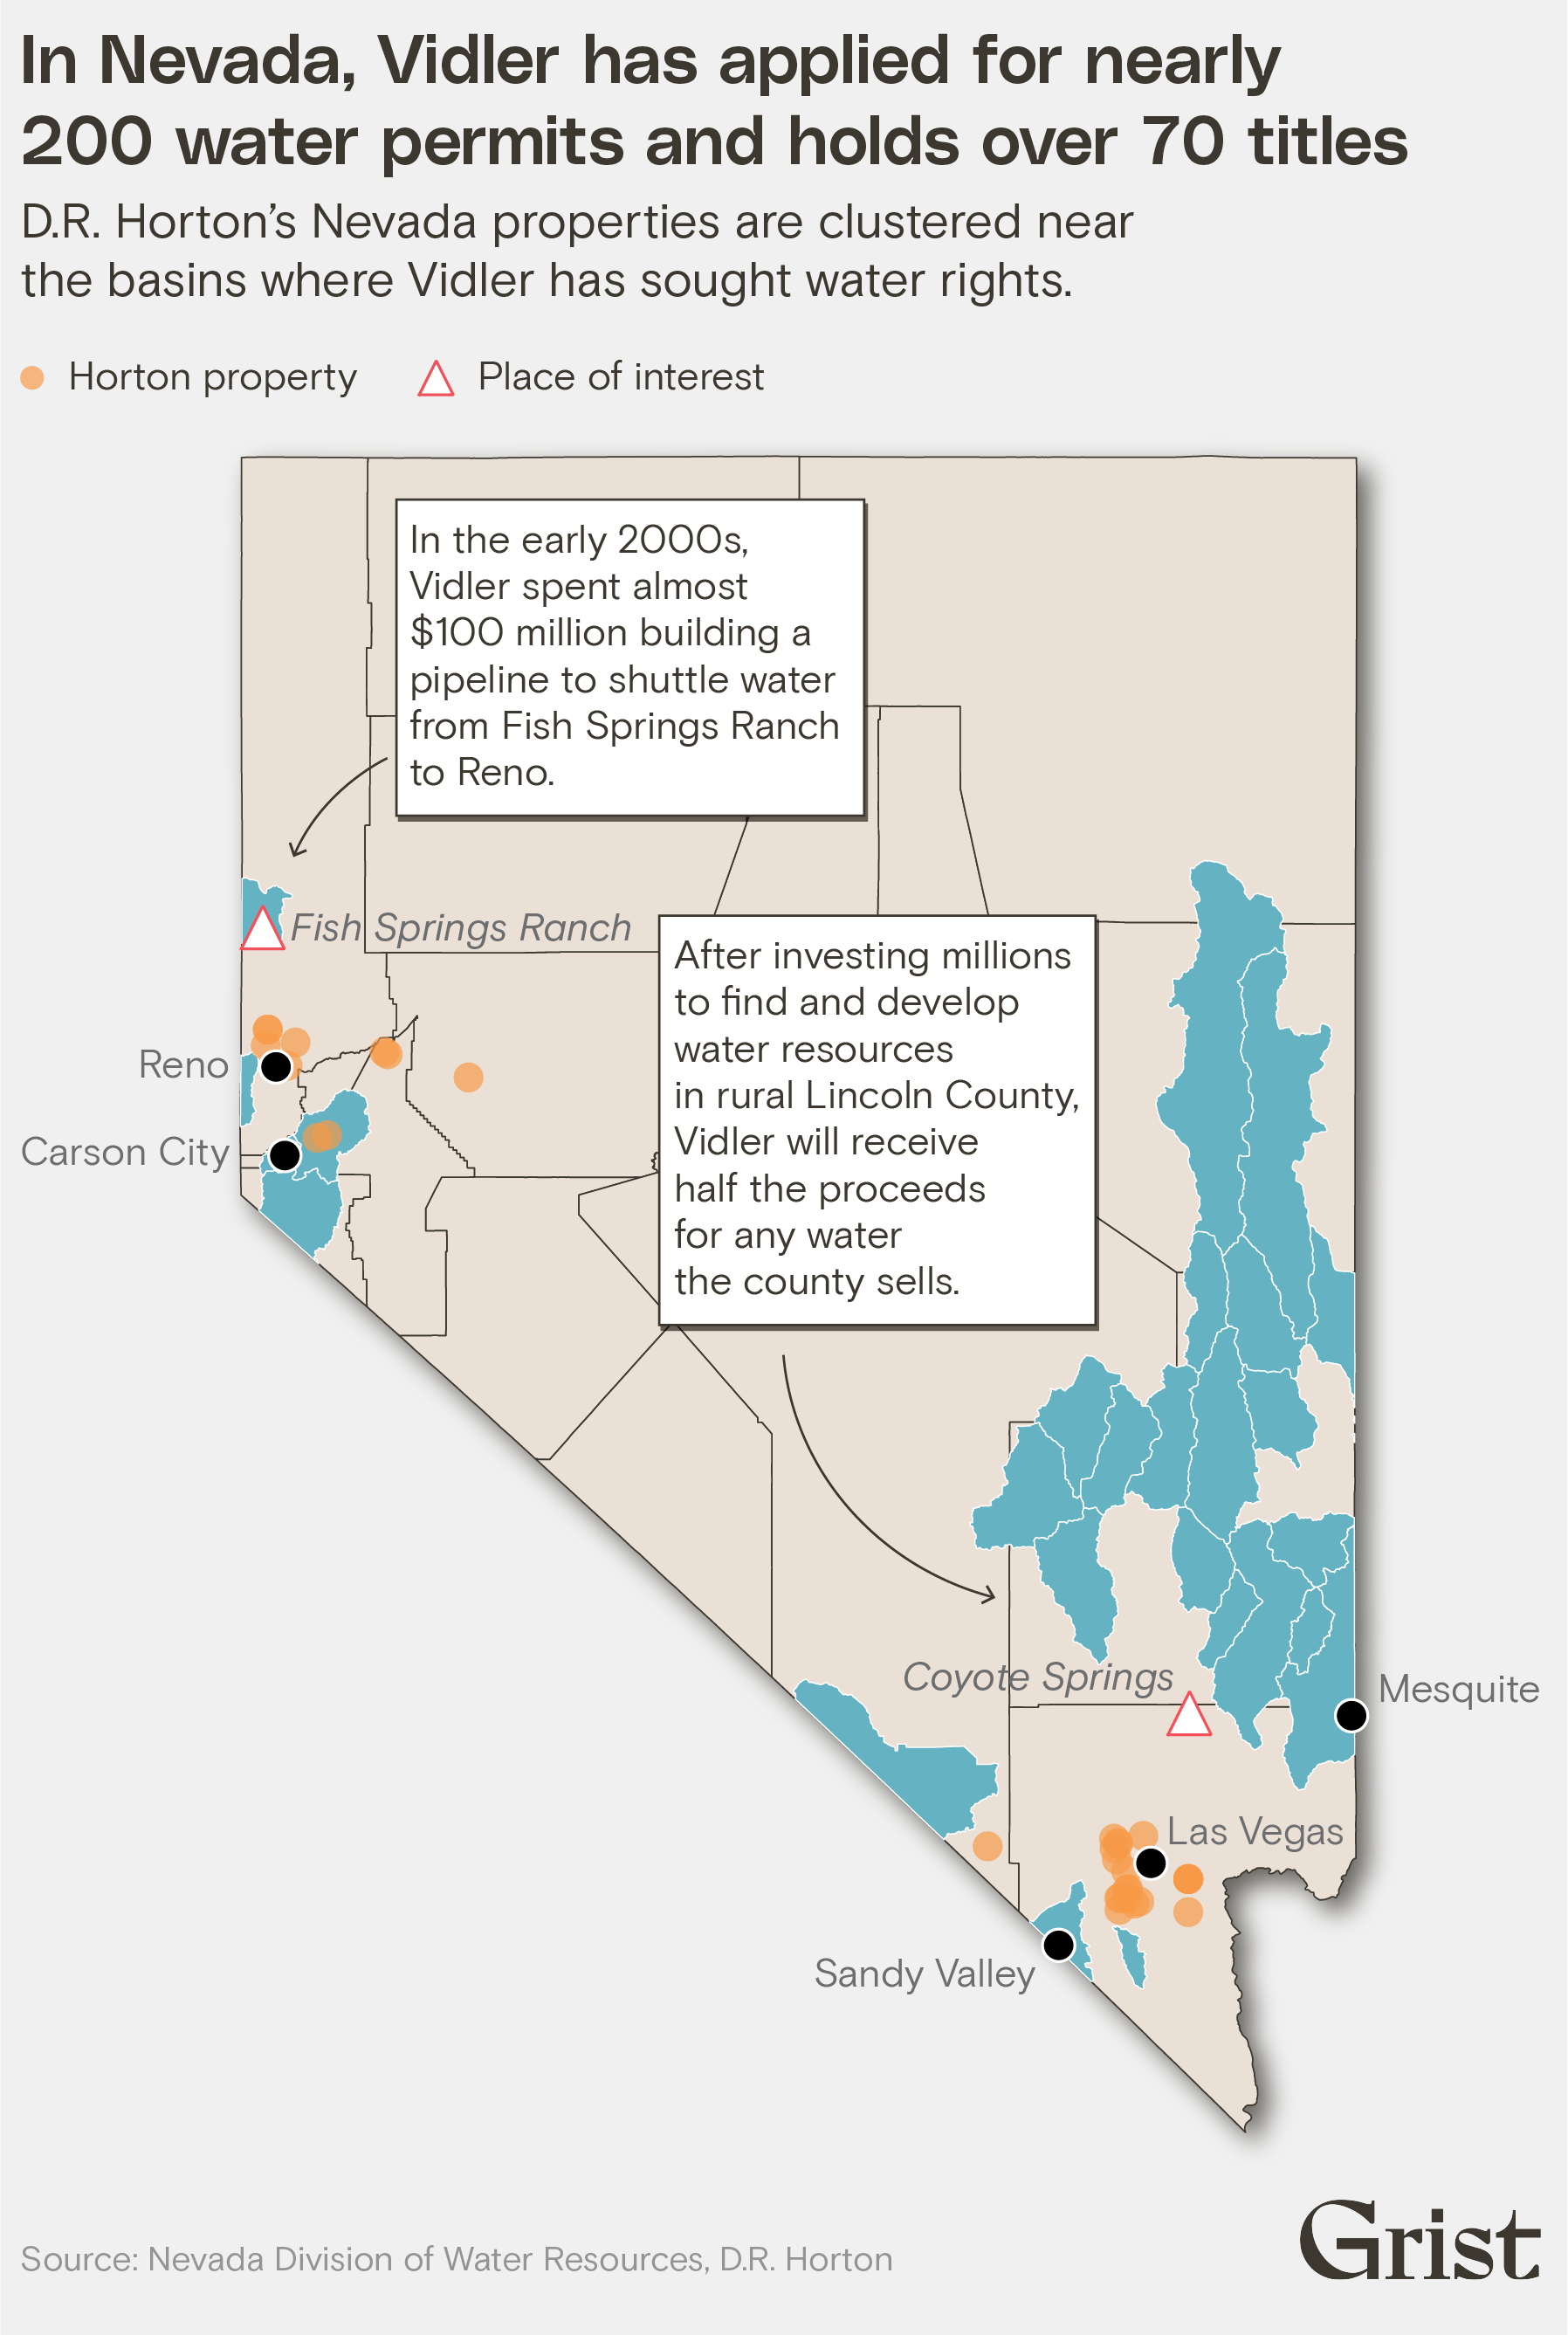 Une carte montrant les propriétés du DR Horton au Nevada. Ils sont regroupés là où Vidler a demandé des droits sur l'eau. Le titre se lit comme suit : 